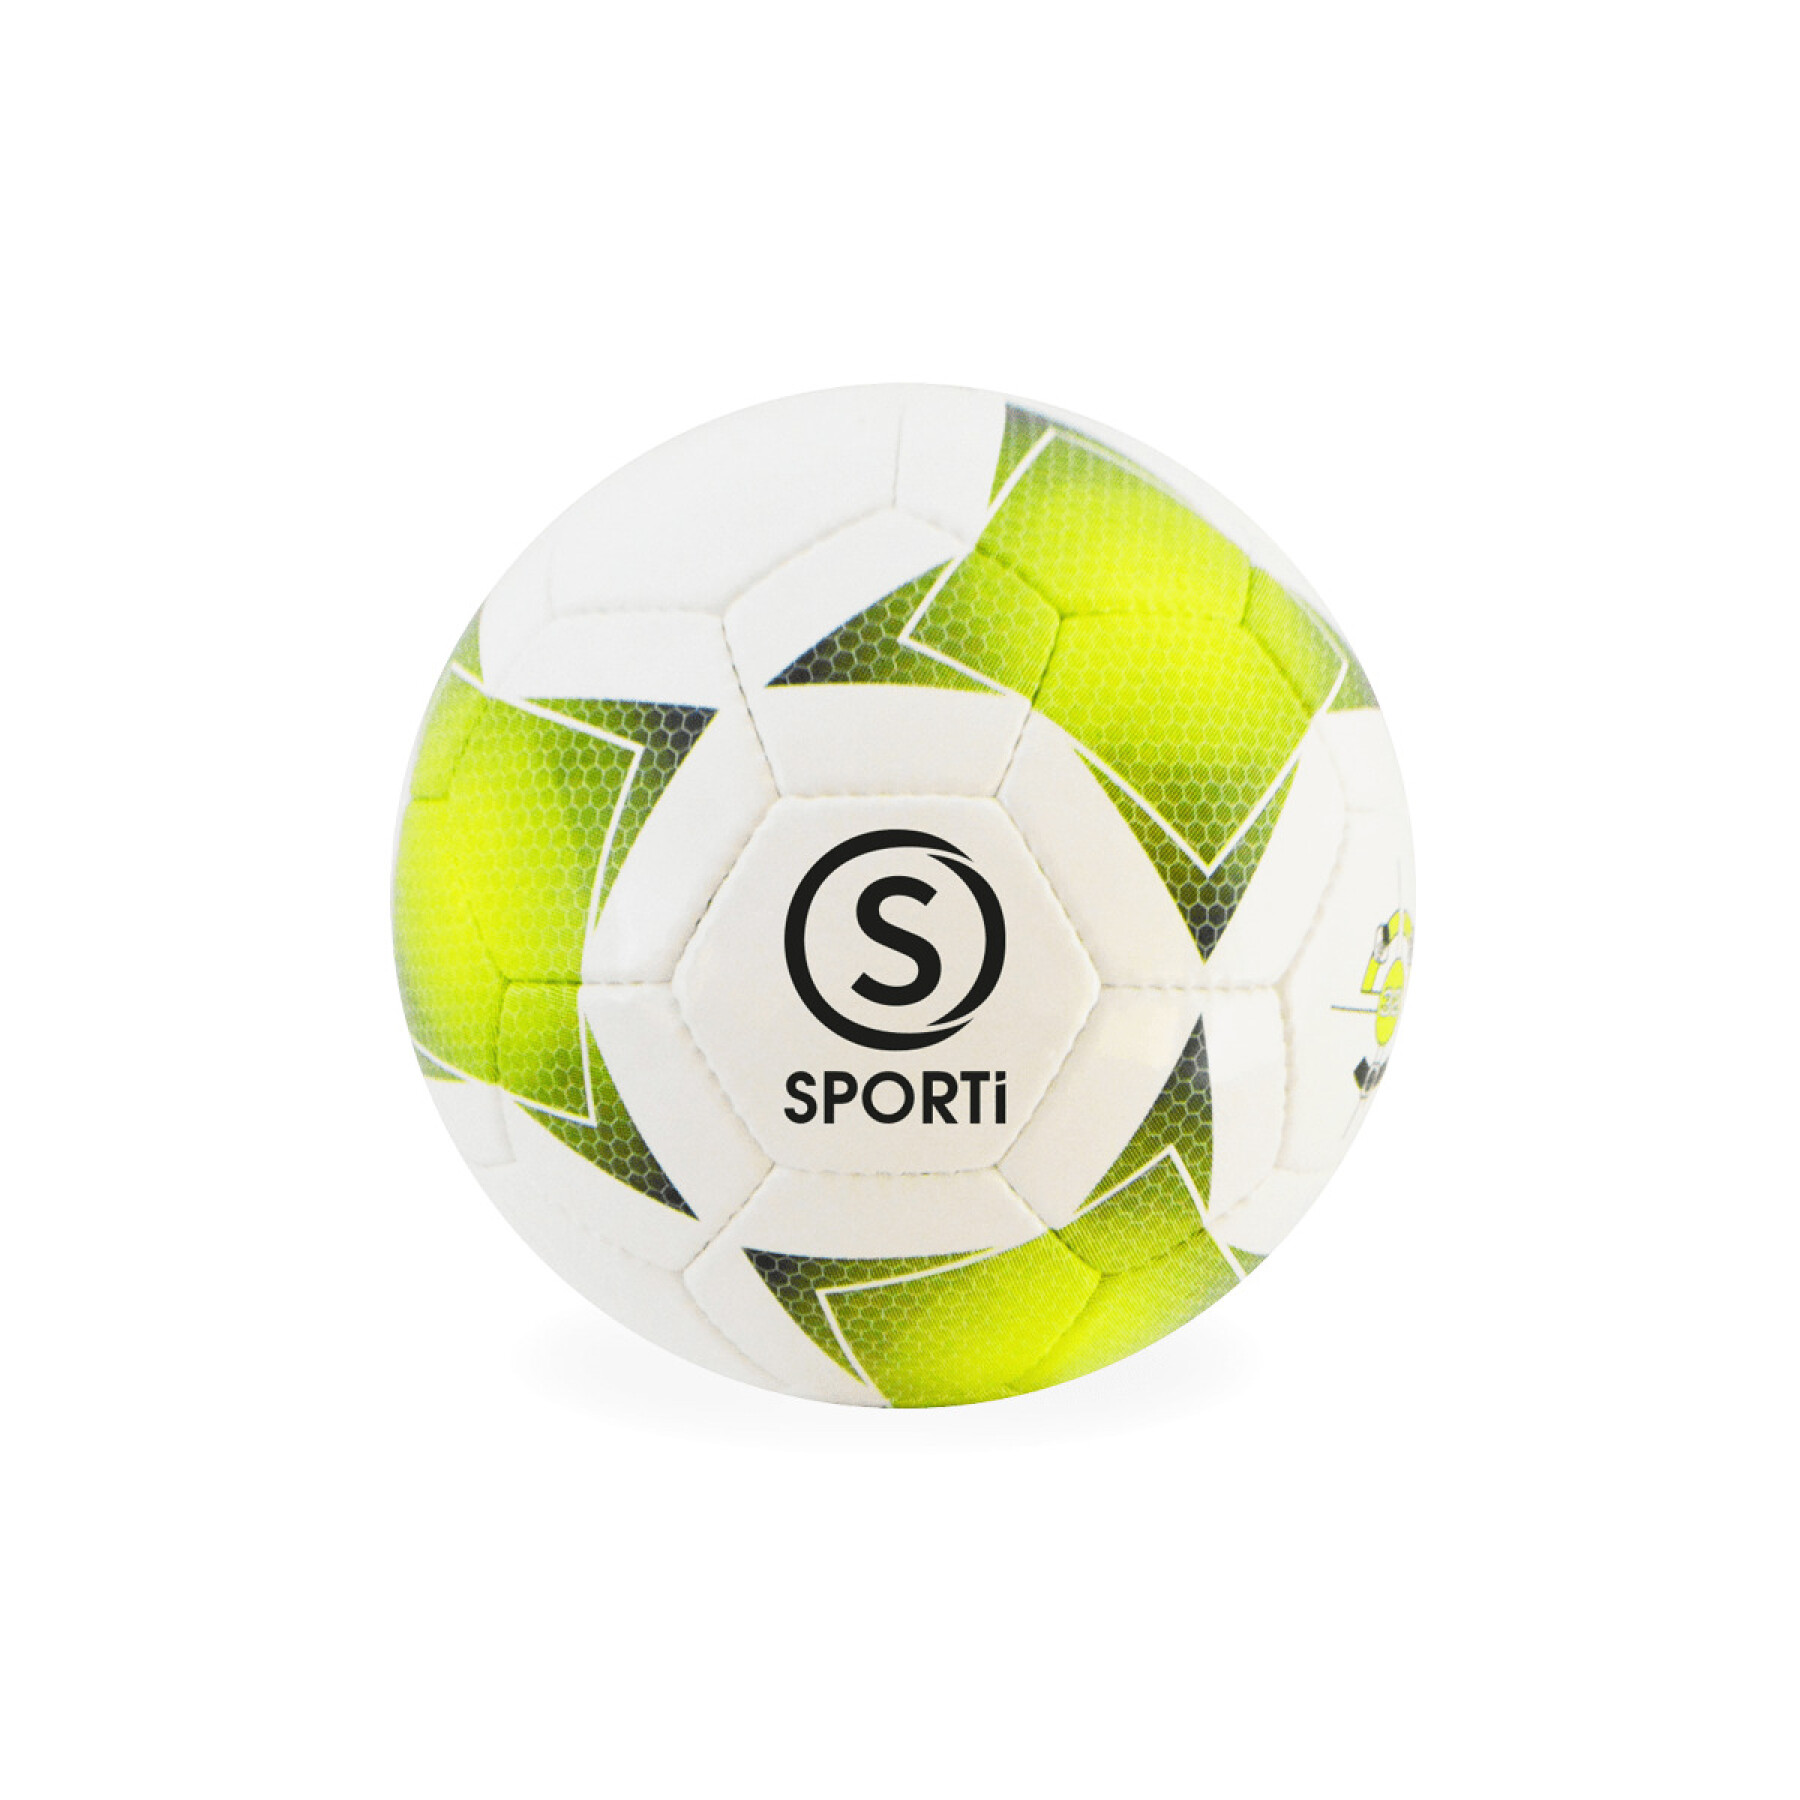 Calcio Sporti United